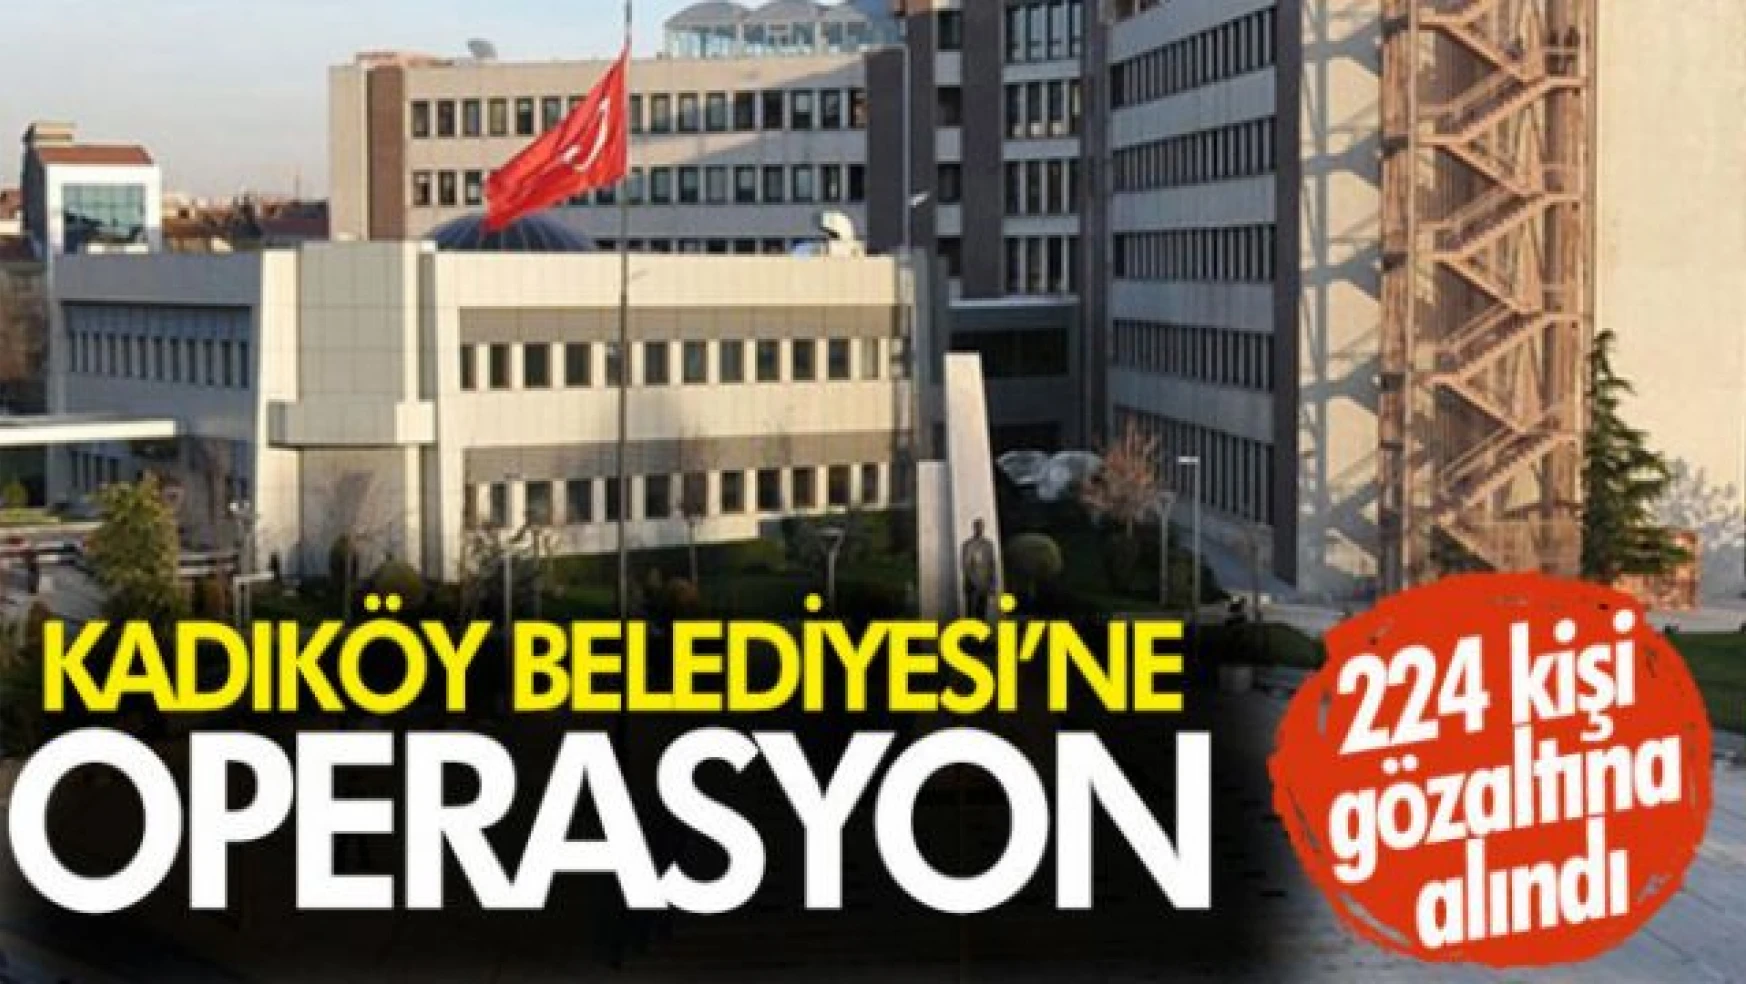 Kadıköy Belediyesi'ne neden operasyon yapıldı?